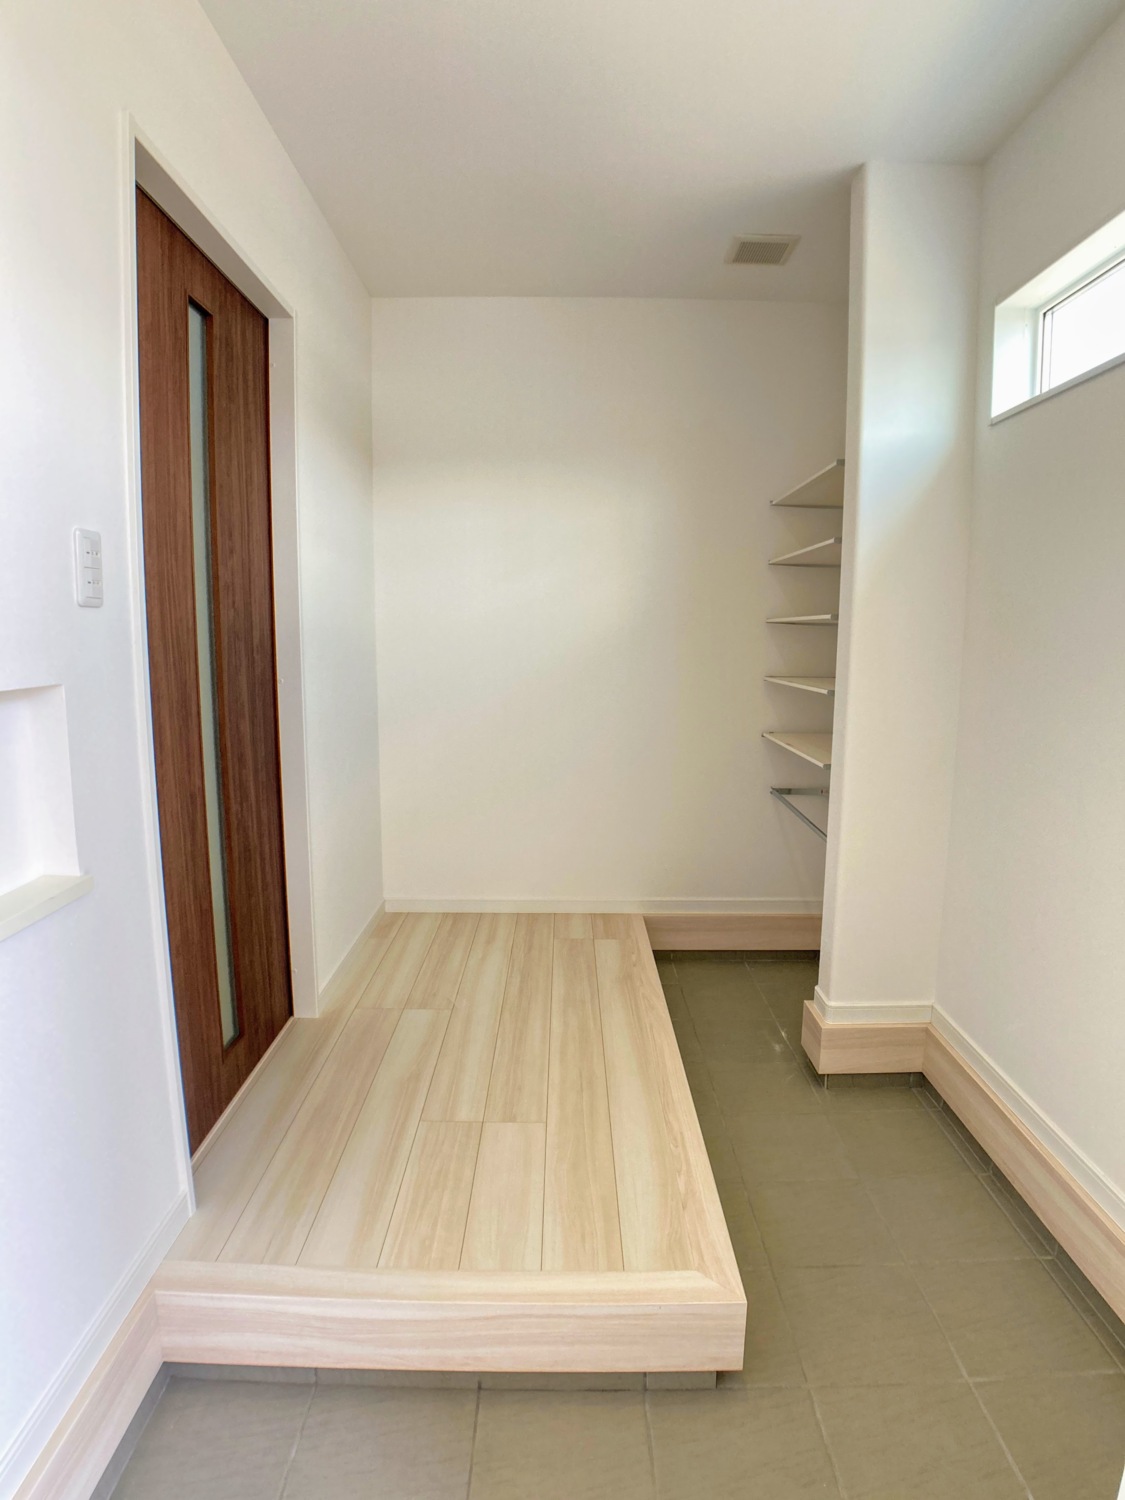 木目調グレー外壁×差し色リーフグリーンの玄関ドアがお出迎え！「シンプルに使いやすく」にこだわった家事効率UPの家